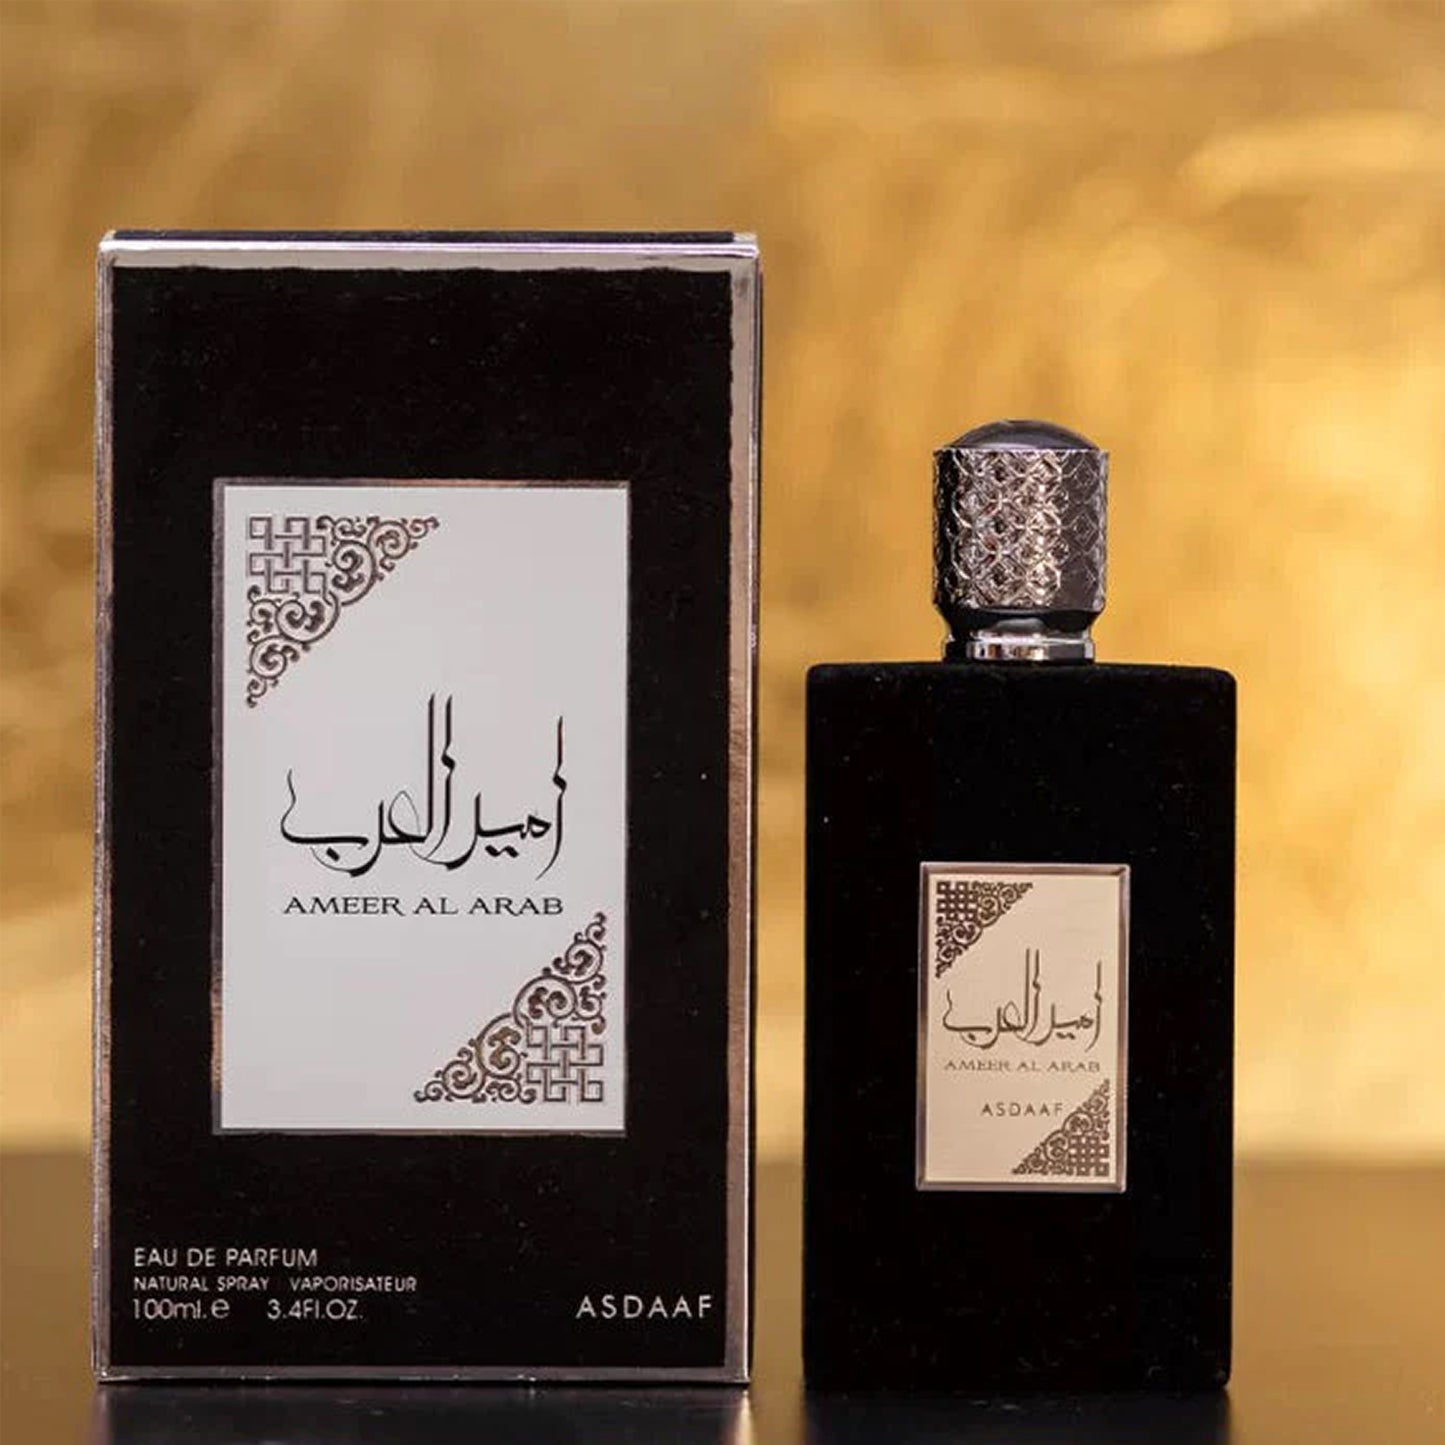 (Black) Ameer Al Arab (Prince of Arabia) - EDP 100ml by Asdaaf - Mens - Spicy, woody, resinous